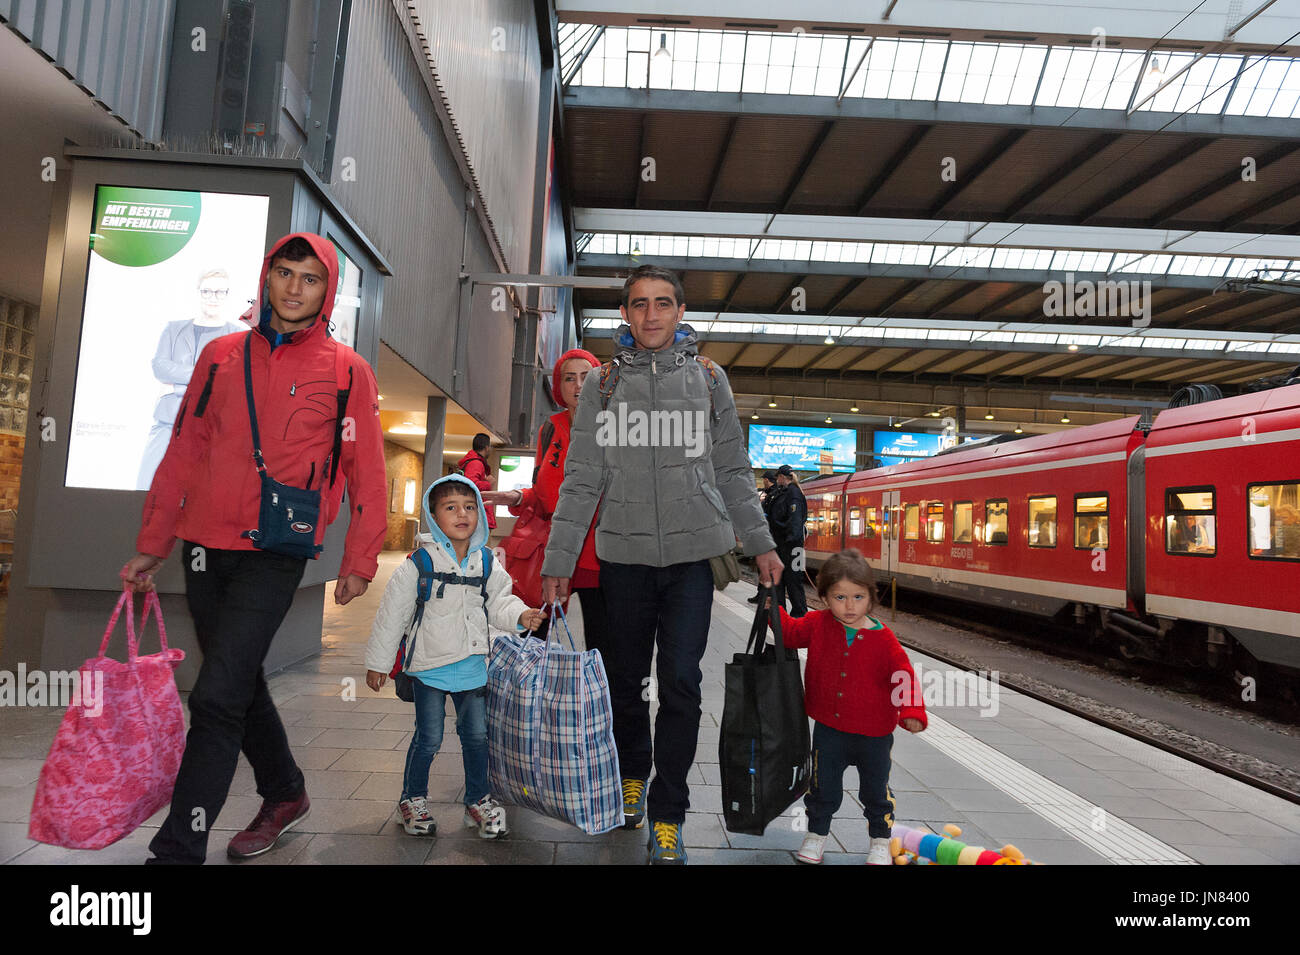 Monaco di Baviera, Germania - Settembre 10th, 2015: siriano due famiglie di rifugiati arrivano alla stazione ferroviaria di Monaco di Baviera. Essi sono in cerca di asilo in Europa. Foto Stock